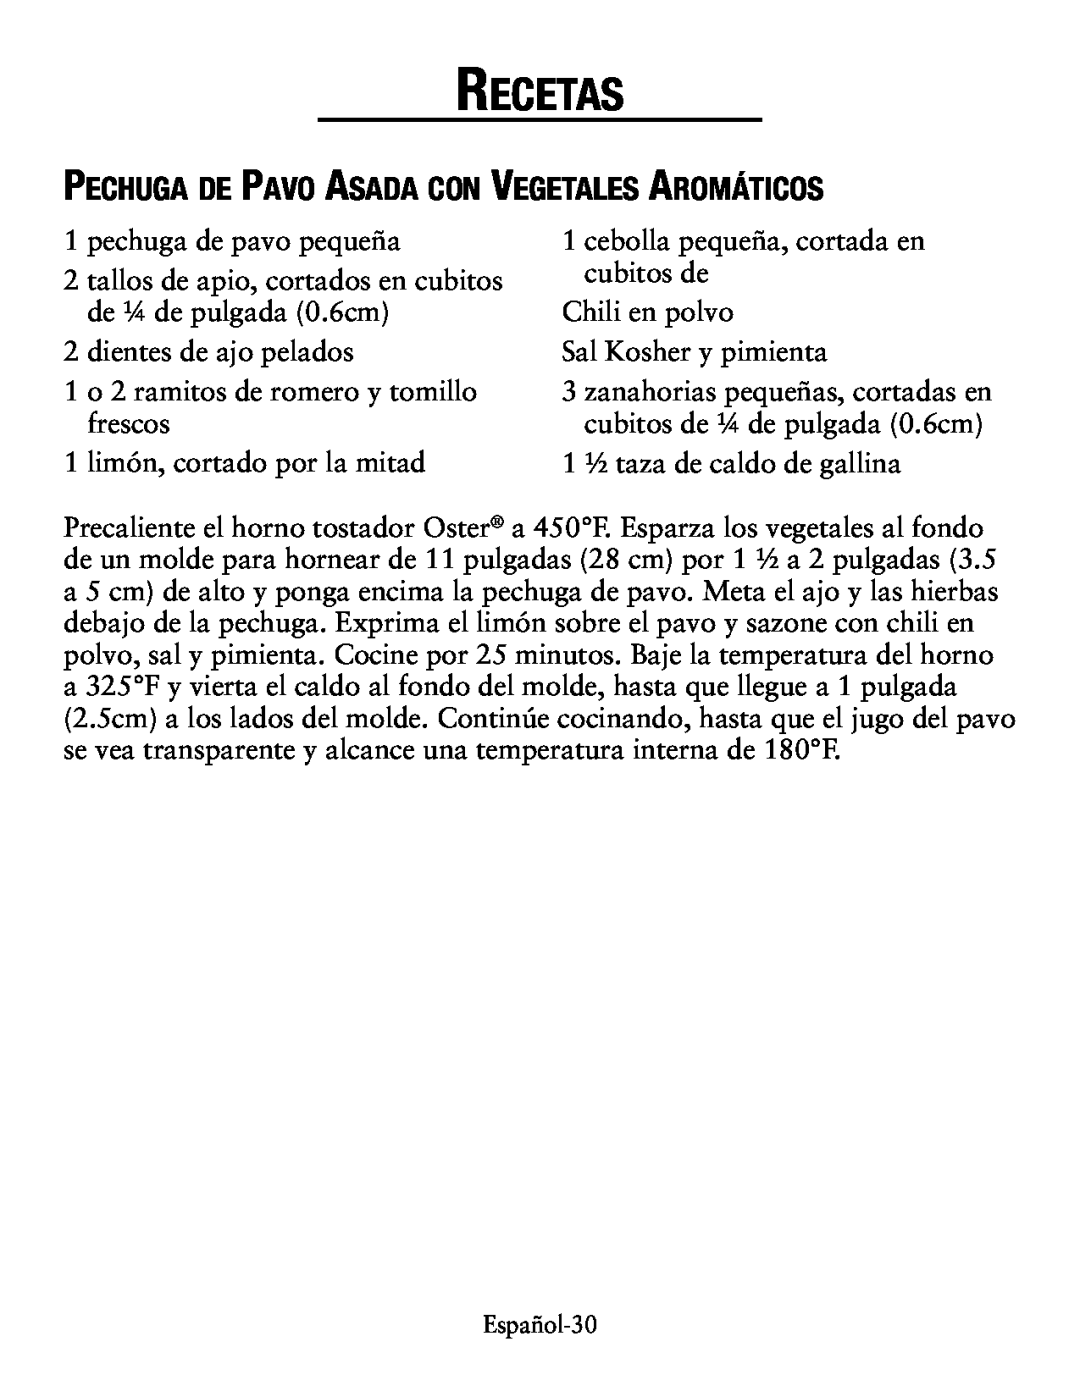 Oster countertop oven, tssttvcg02 user manual Pechuga de Pavo Asada con Vegetales Aromáticos, Recetas 